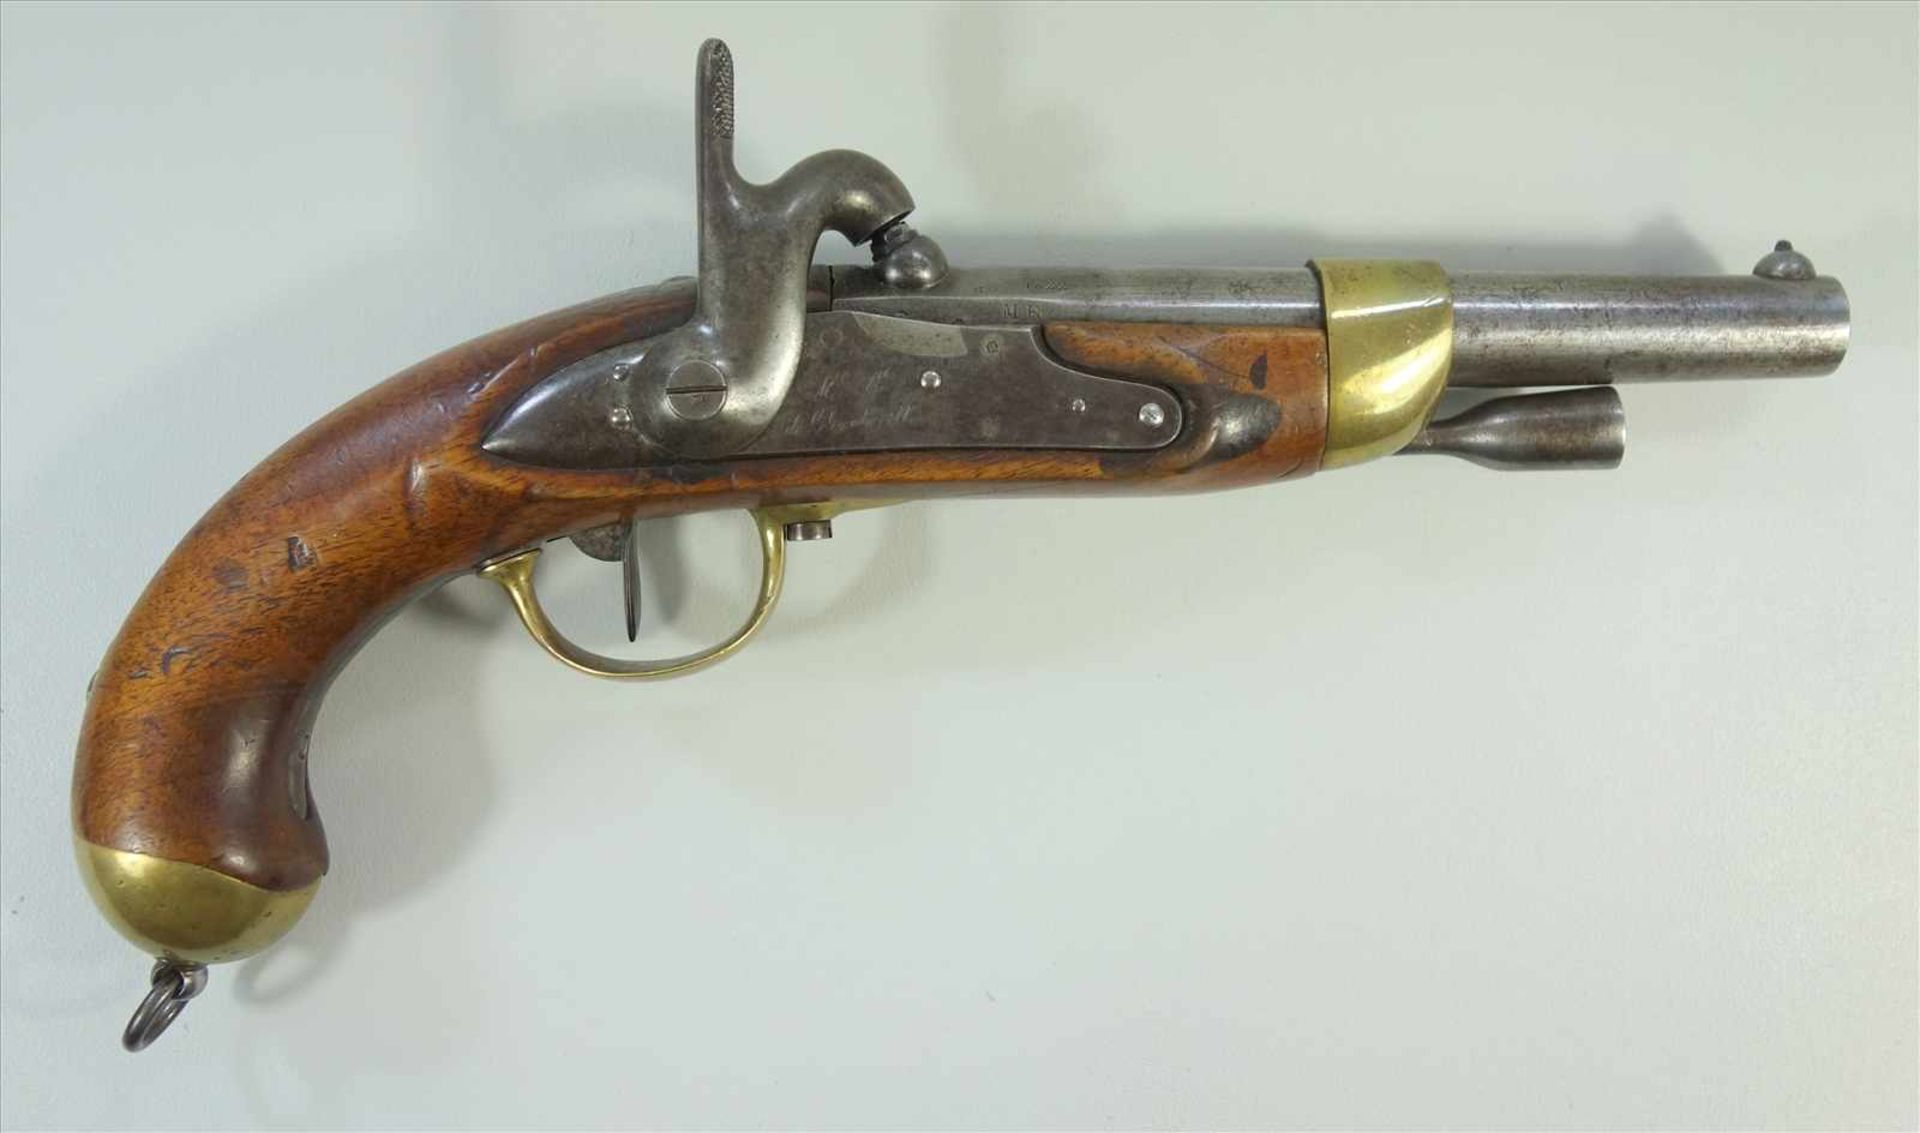 Perkussionspistole, Frankreich, Mod.1822t Bis, Kal.17.6mm, Lauflänge 190mm, gesamt 30 m, Lauf,